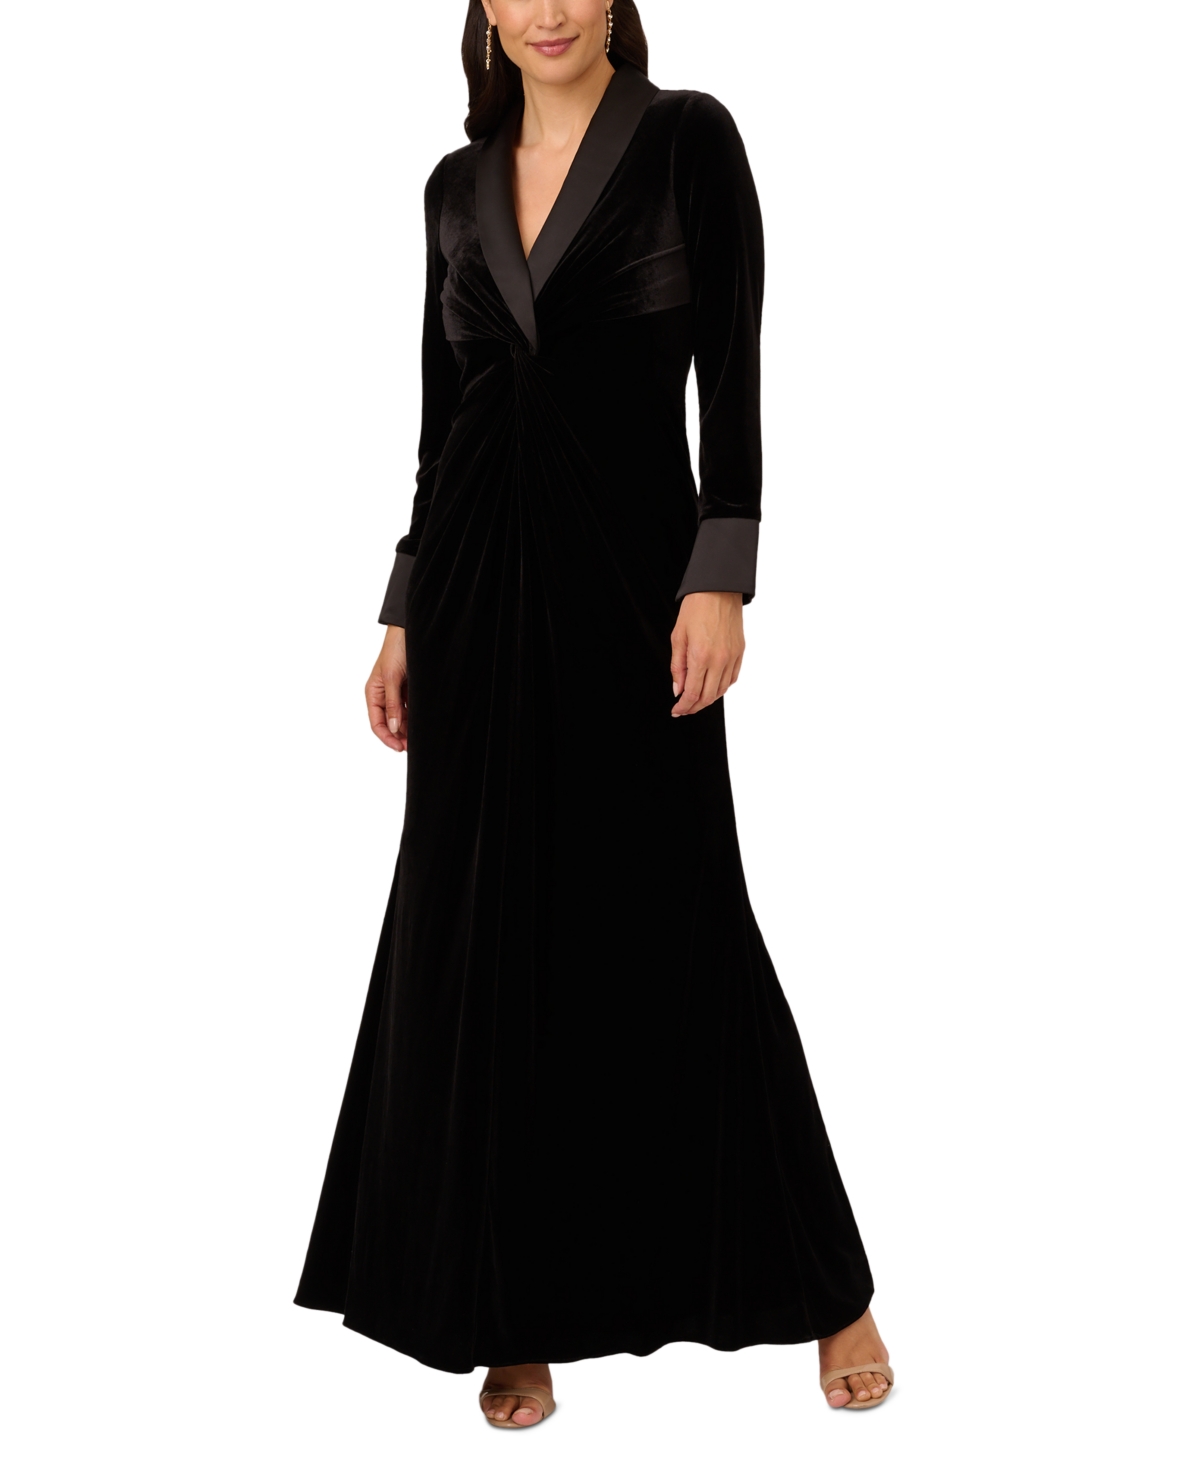 Vintage Evening Dresses, Vintage Formal Dresses Adrianna Papell Womens Velvet Twist-Front Tuxedo Gown - Black $219.00 AT vintagedancer.com